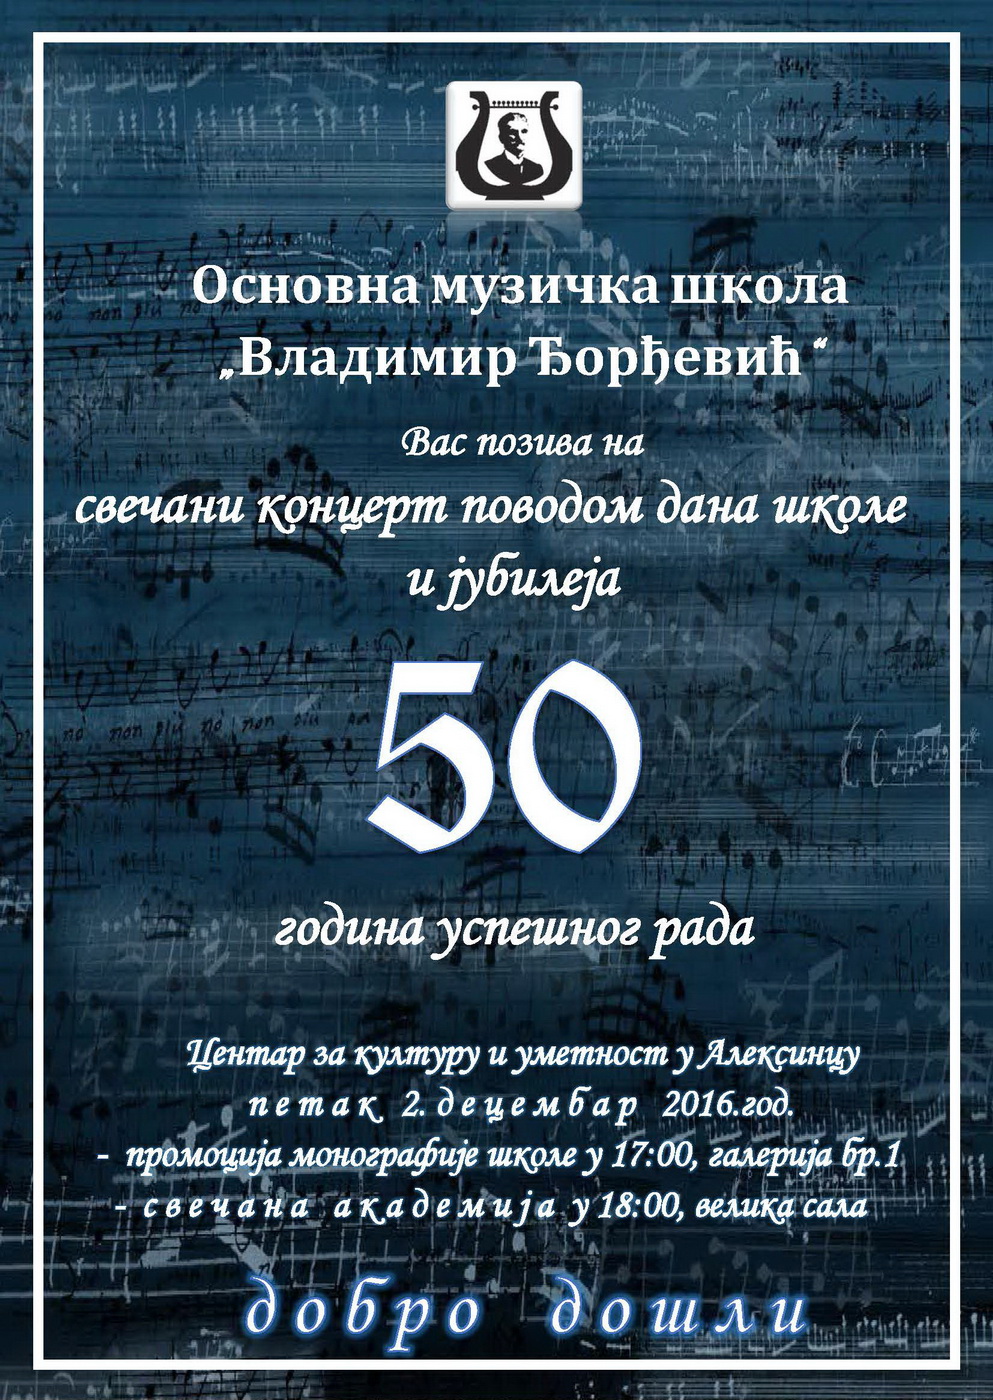 Концерт ОМШ „Владимир Ђорђевић“ <br>поводом Дана школе <br>и јубилеја 50 година успешног рада